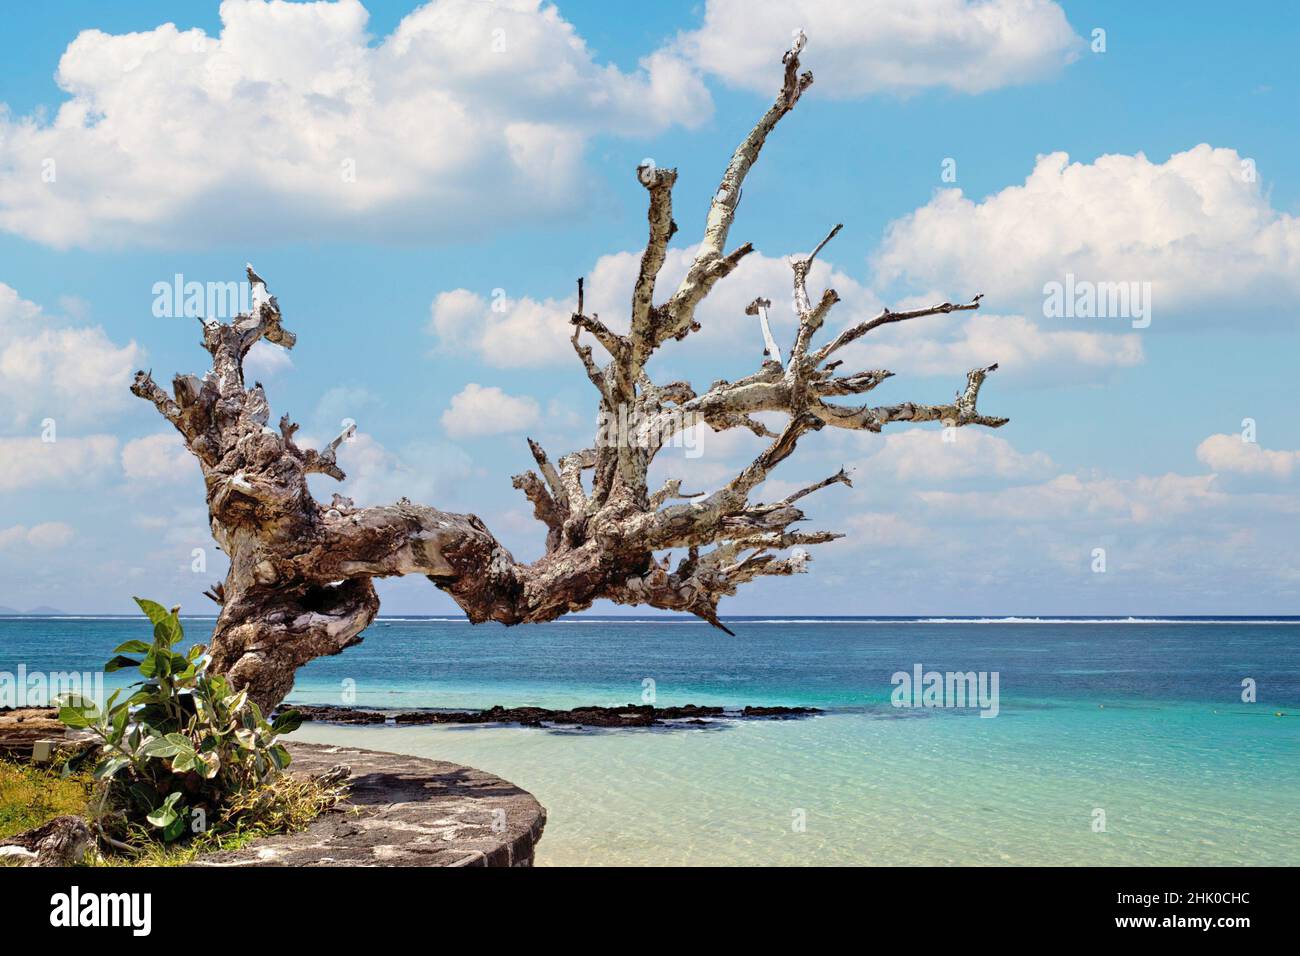 Tronco de árbol seco, que se extiende hacia el Mar Caribe. Foto de stock